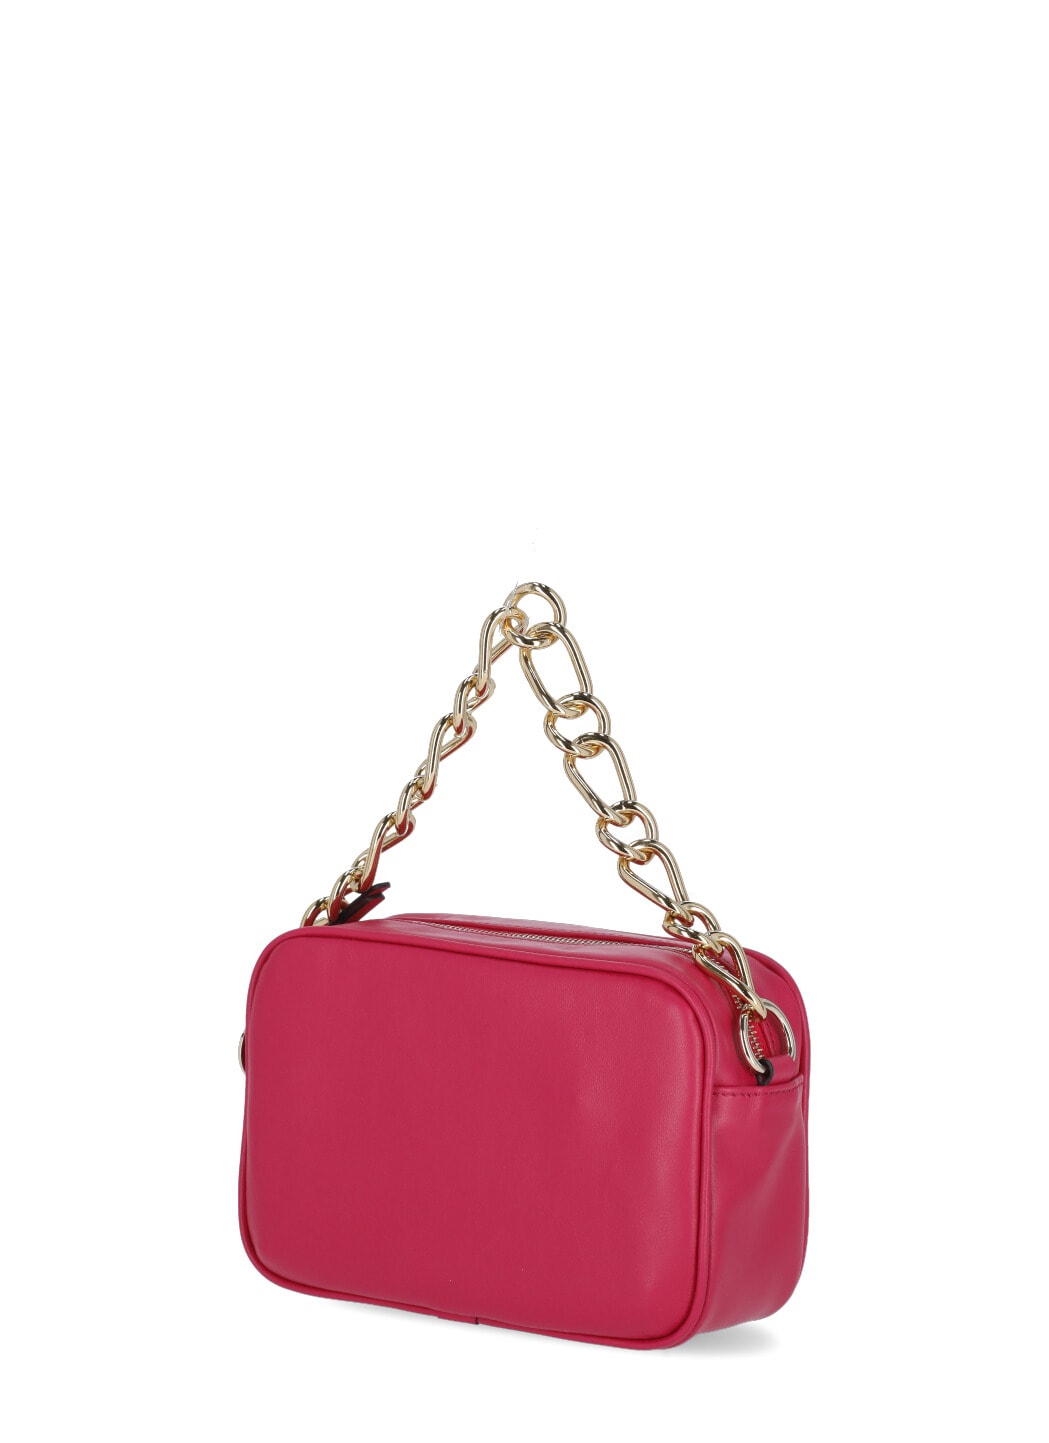 Valentino Leather Shoulder Bag In Magenta | ModeSens